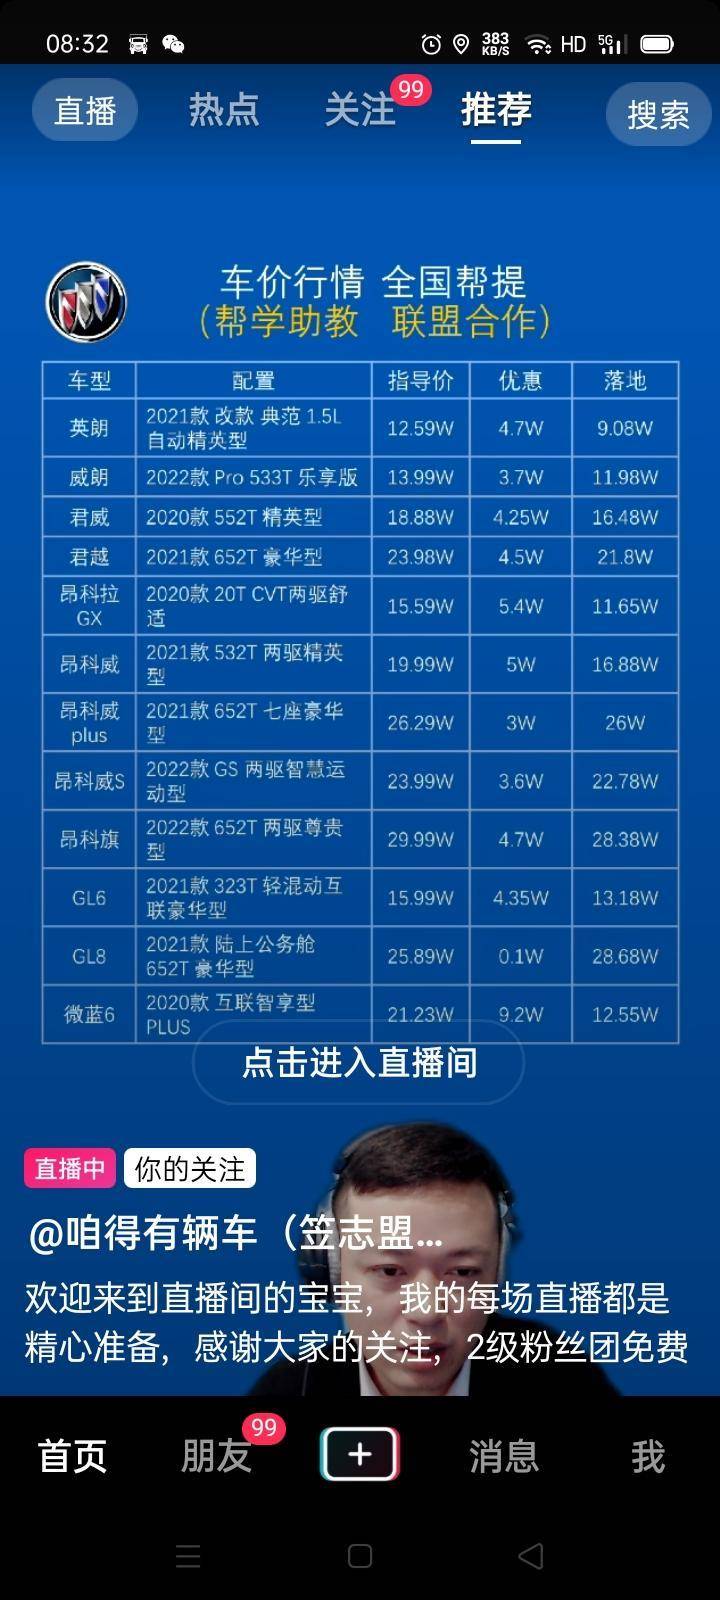 威朗 昨天山东潍坊鑫易卓汽车服务汽车直购超市打来电话12.3到12.4可以落地，没有服务费自己上牌120块搞定管不管入手。